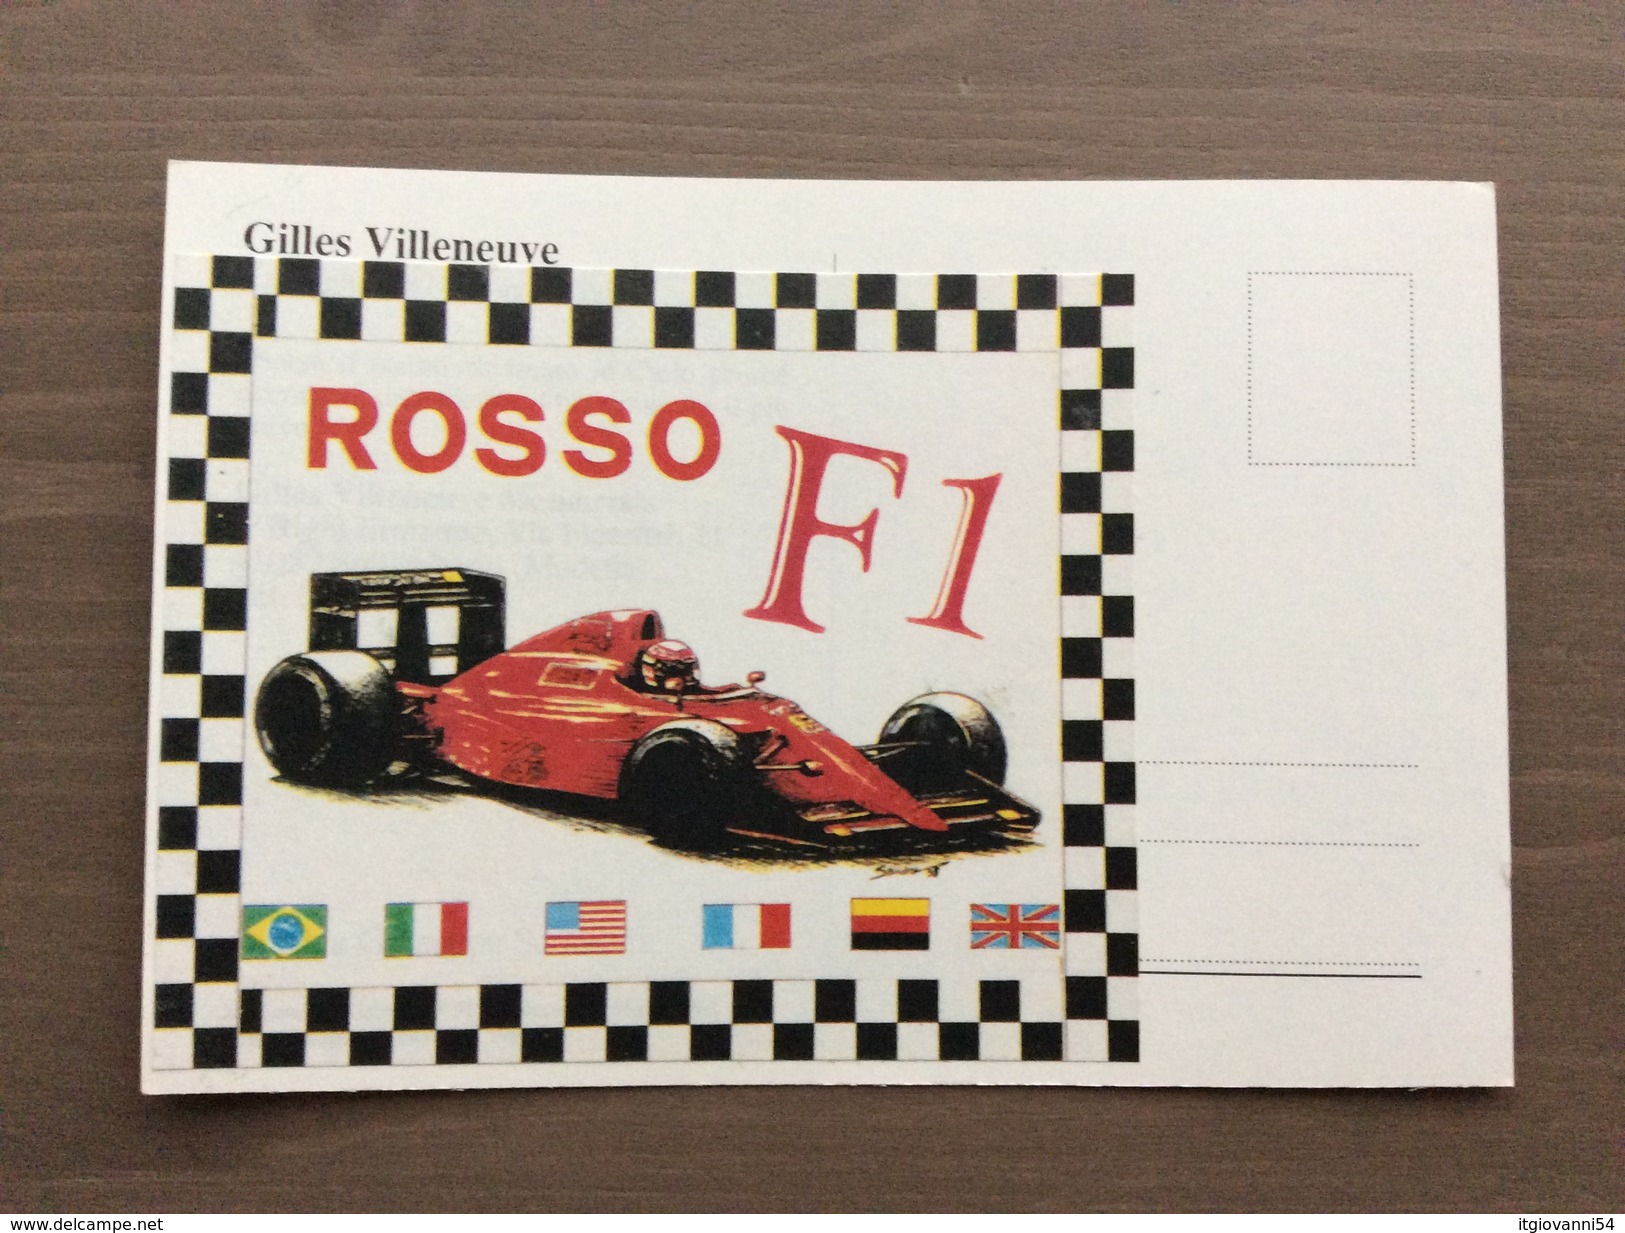 Cartolina In Bianco Del 1993 "Gilles Villeneuve Lives", Da Un Disegno Di Giuseppe Scorzoni Del 1980 - Grand Prix / F1